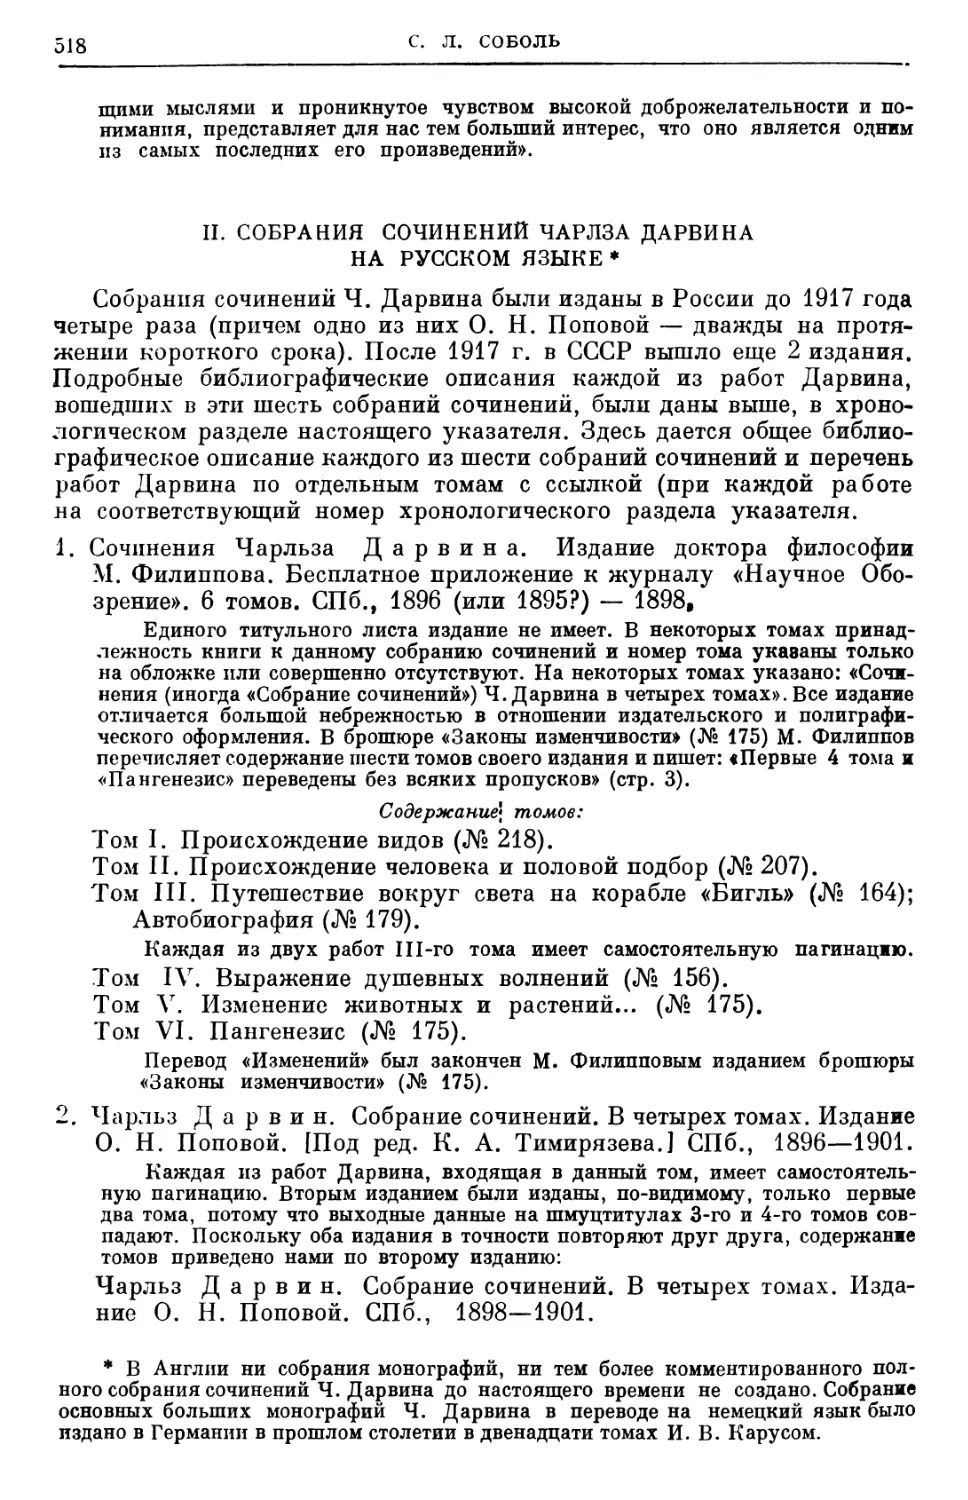 II. Собирания сочинений Чарлза Дарвина на русском языке